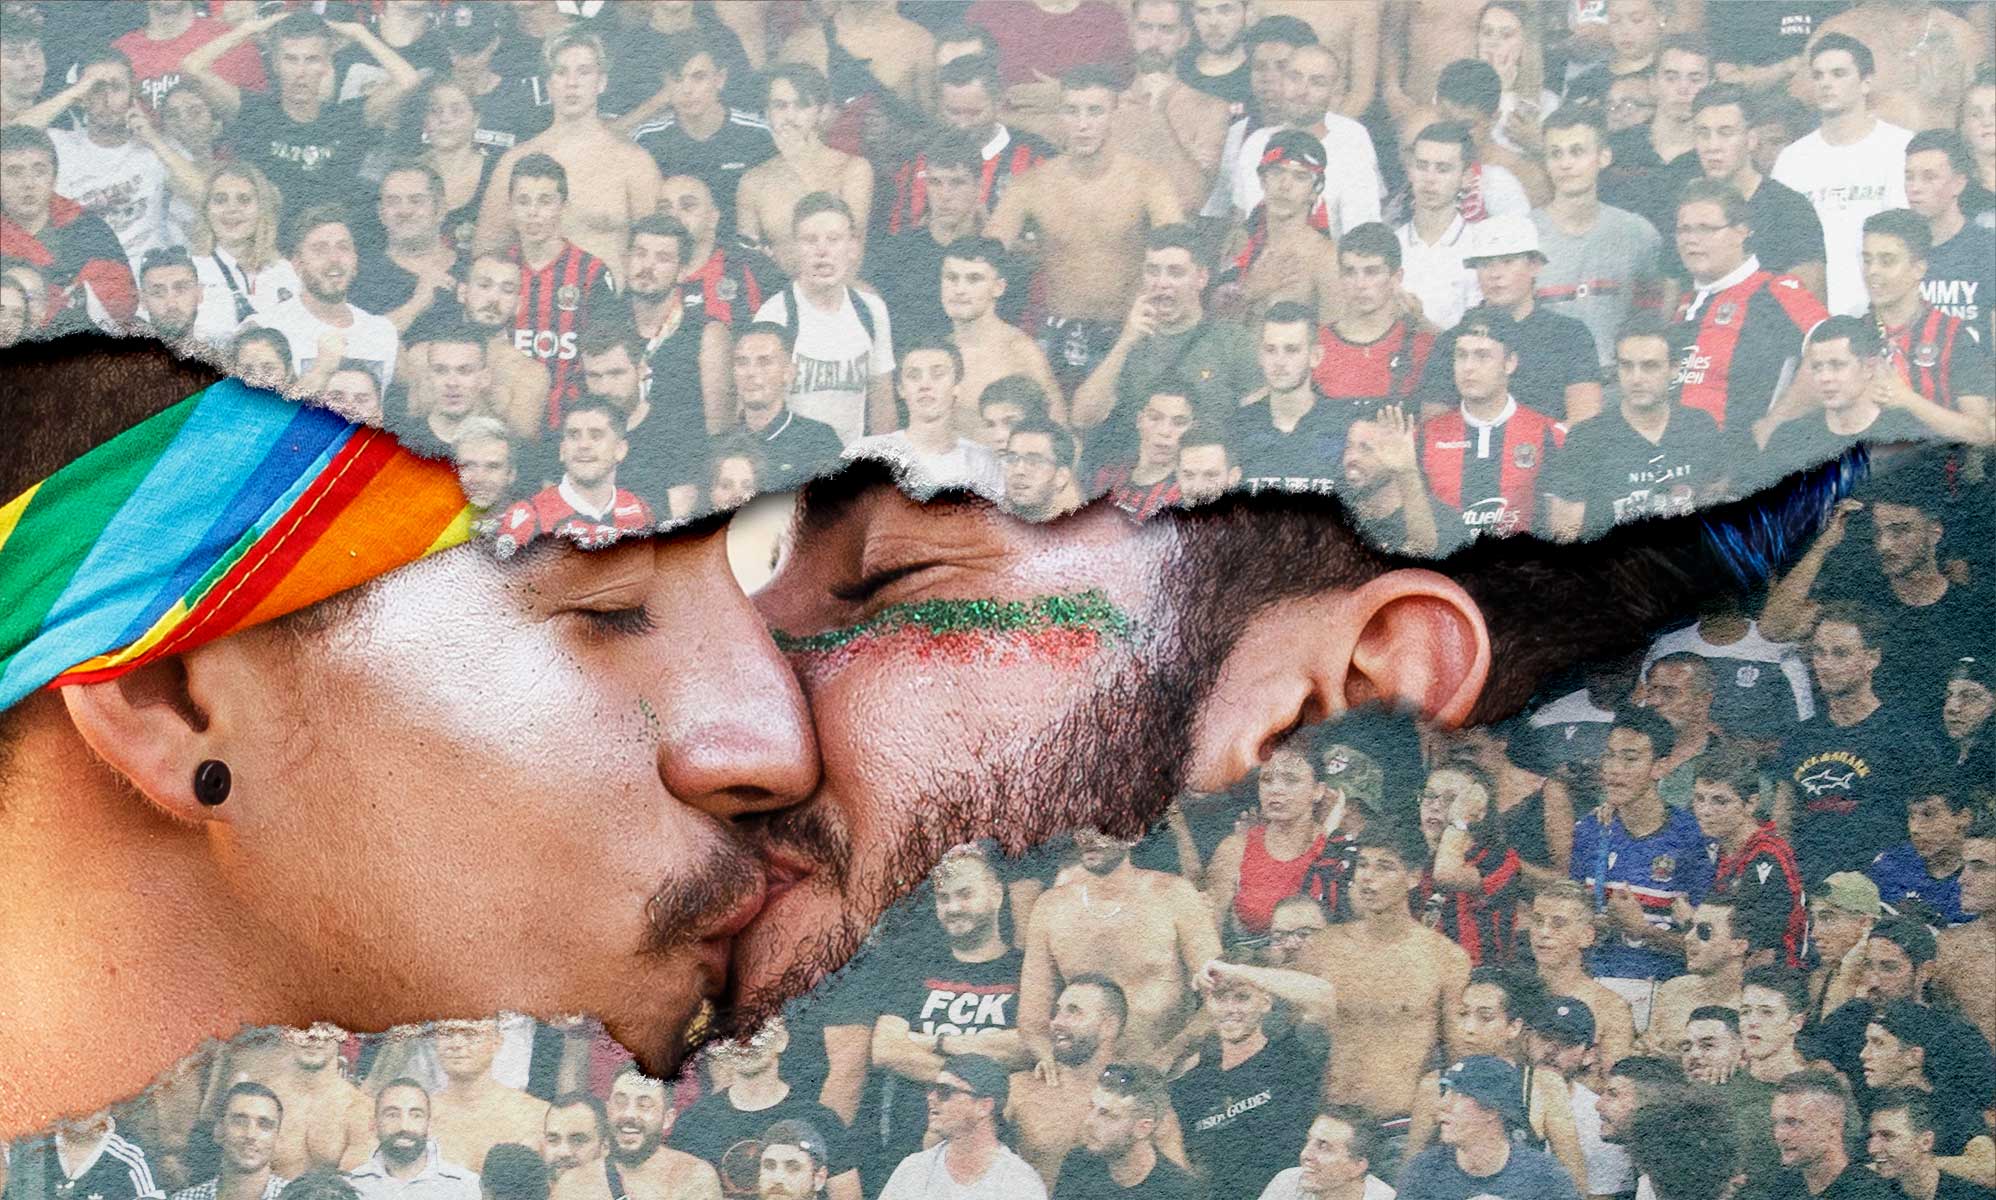 El aumento de la homofobia en el fútbol necesita ser controlado